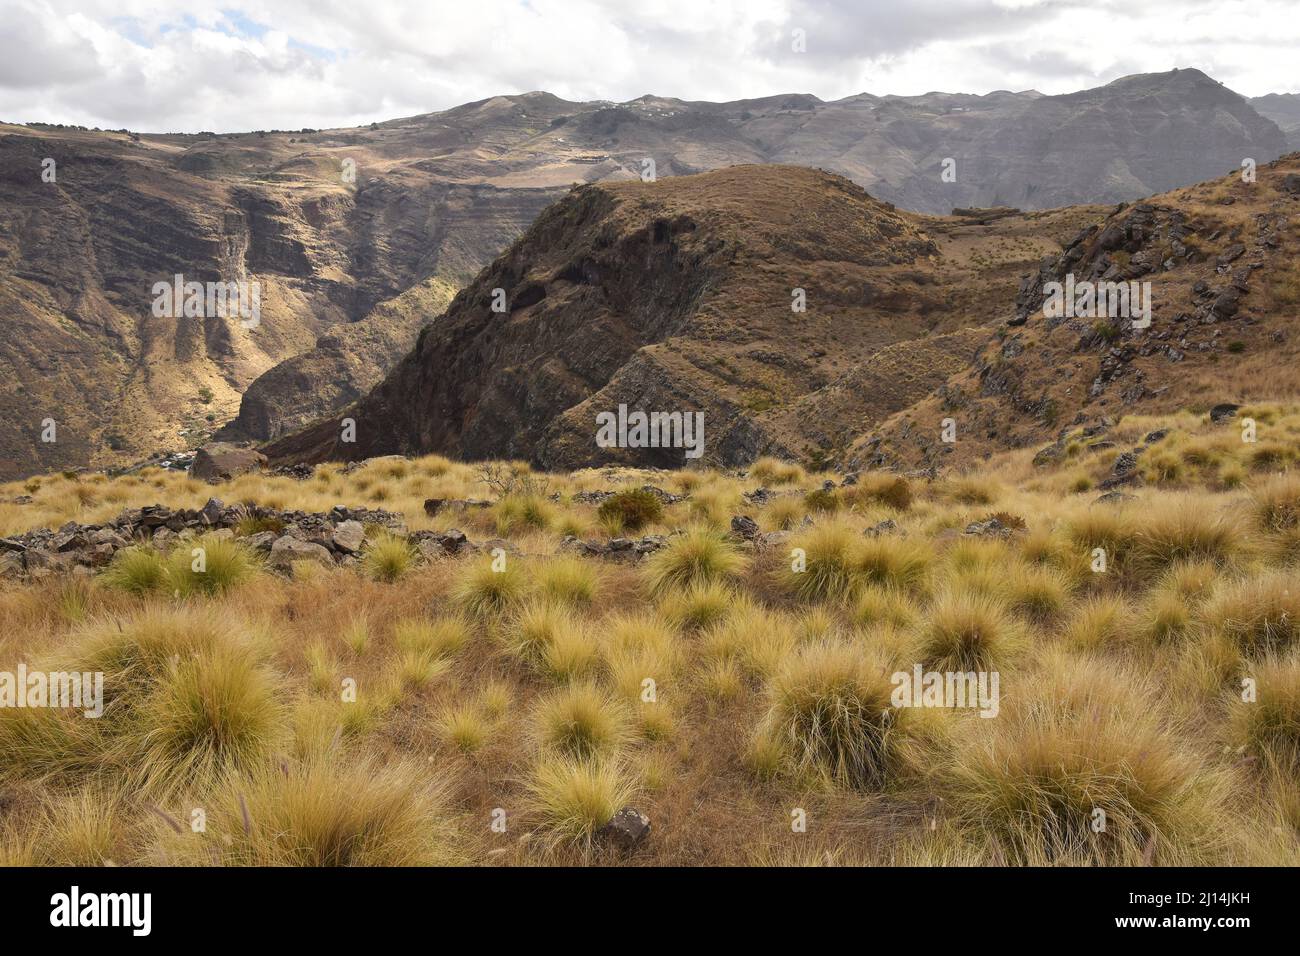 Paysage herbacé avec des montagnes volcaniques arides près d'Agaete dans le nord-ouest de la Grande Canarie îles Canaries Espagne. Banque D'Images